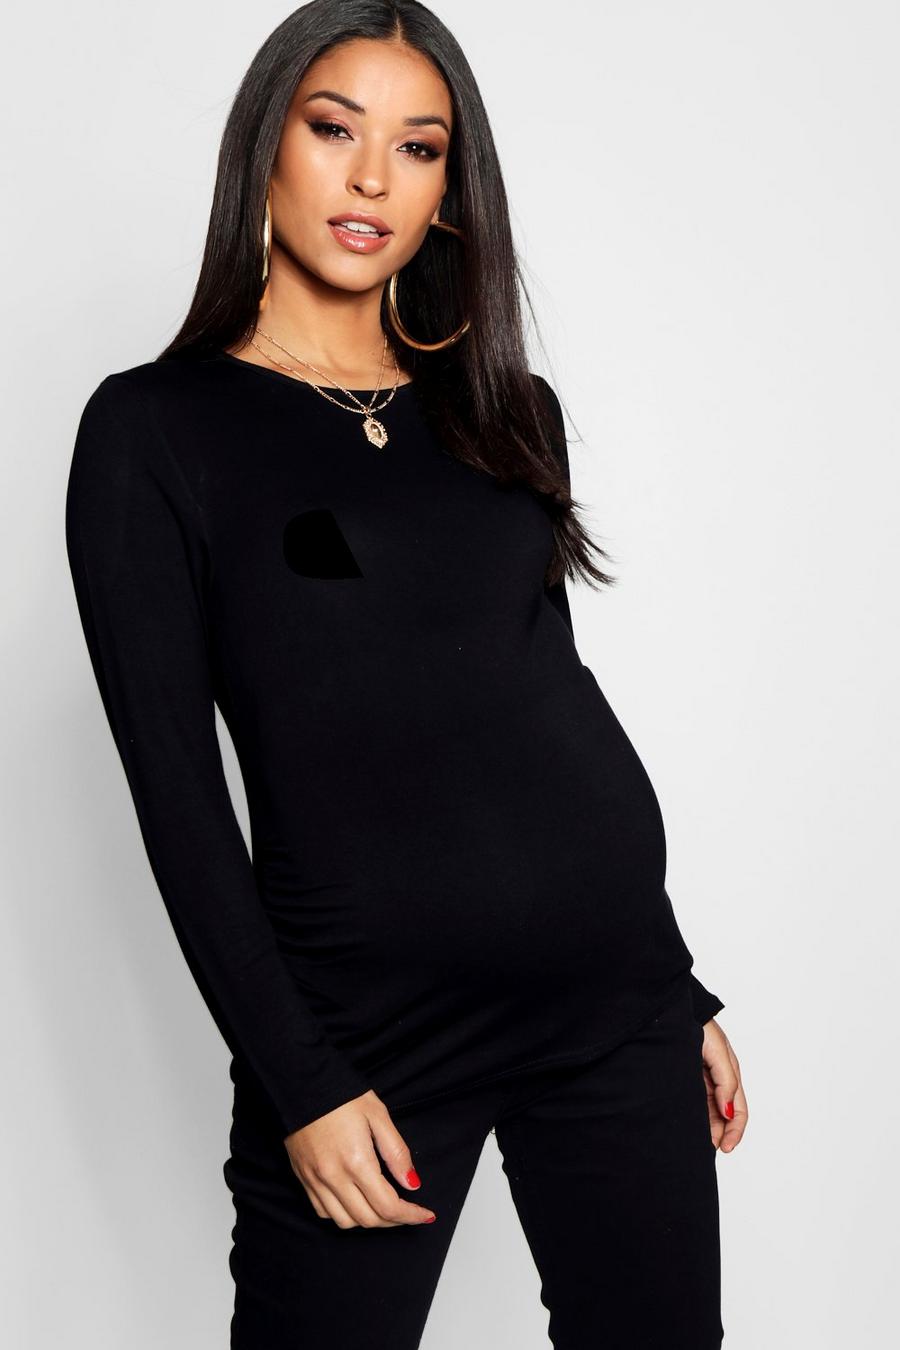 שחור nero טישרט קפלים שרוול ארוך בגדי היריון